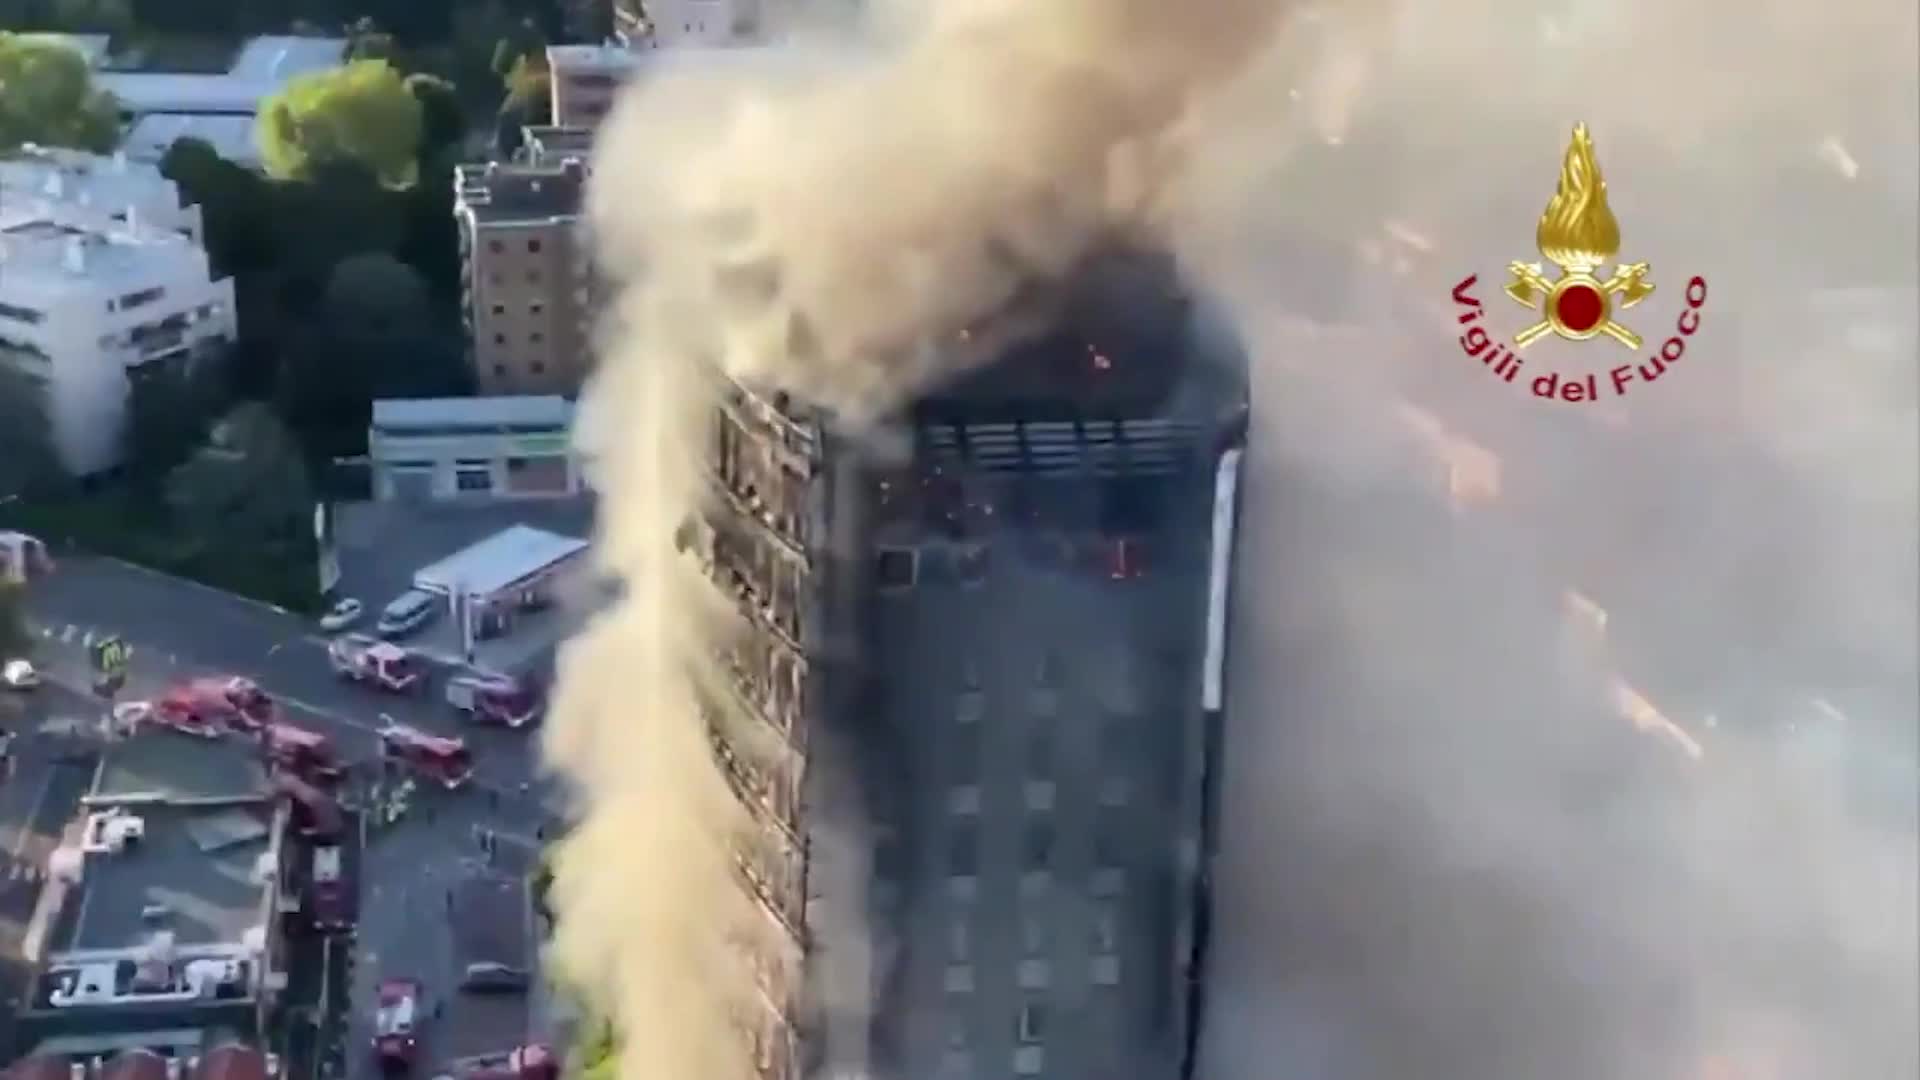 Tragedia sfiorata a Milano: palazzo di 15 piani a fuoco, escluse vittime